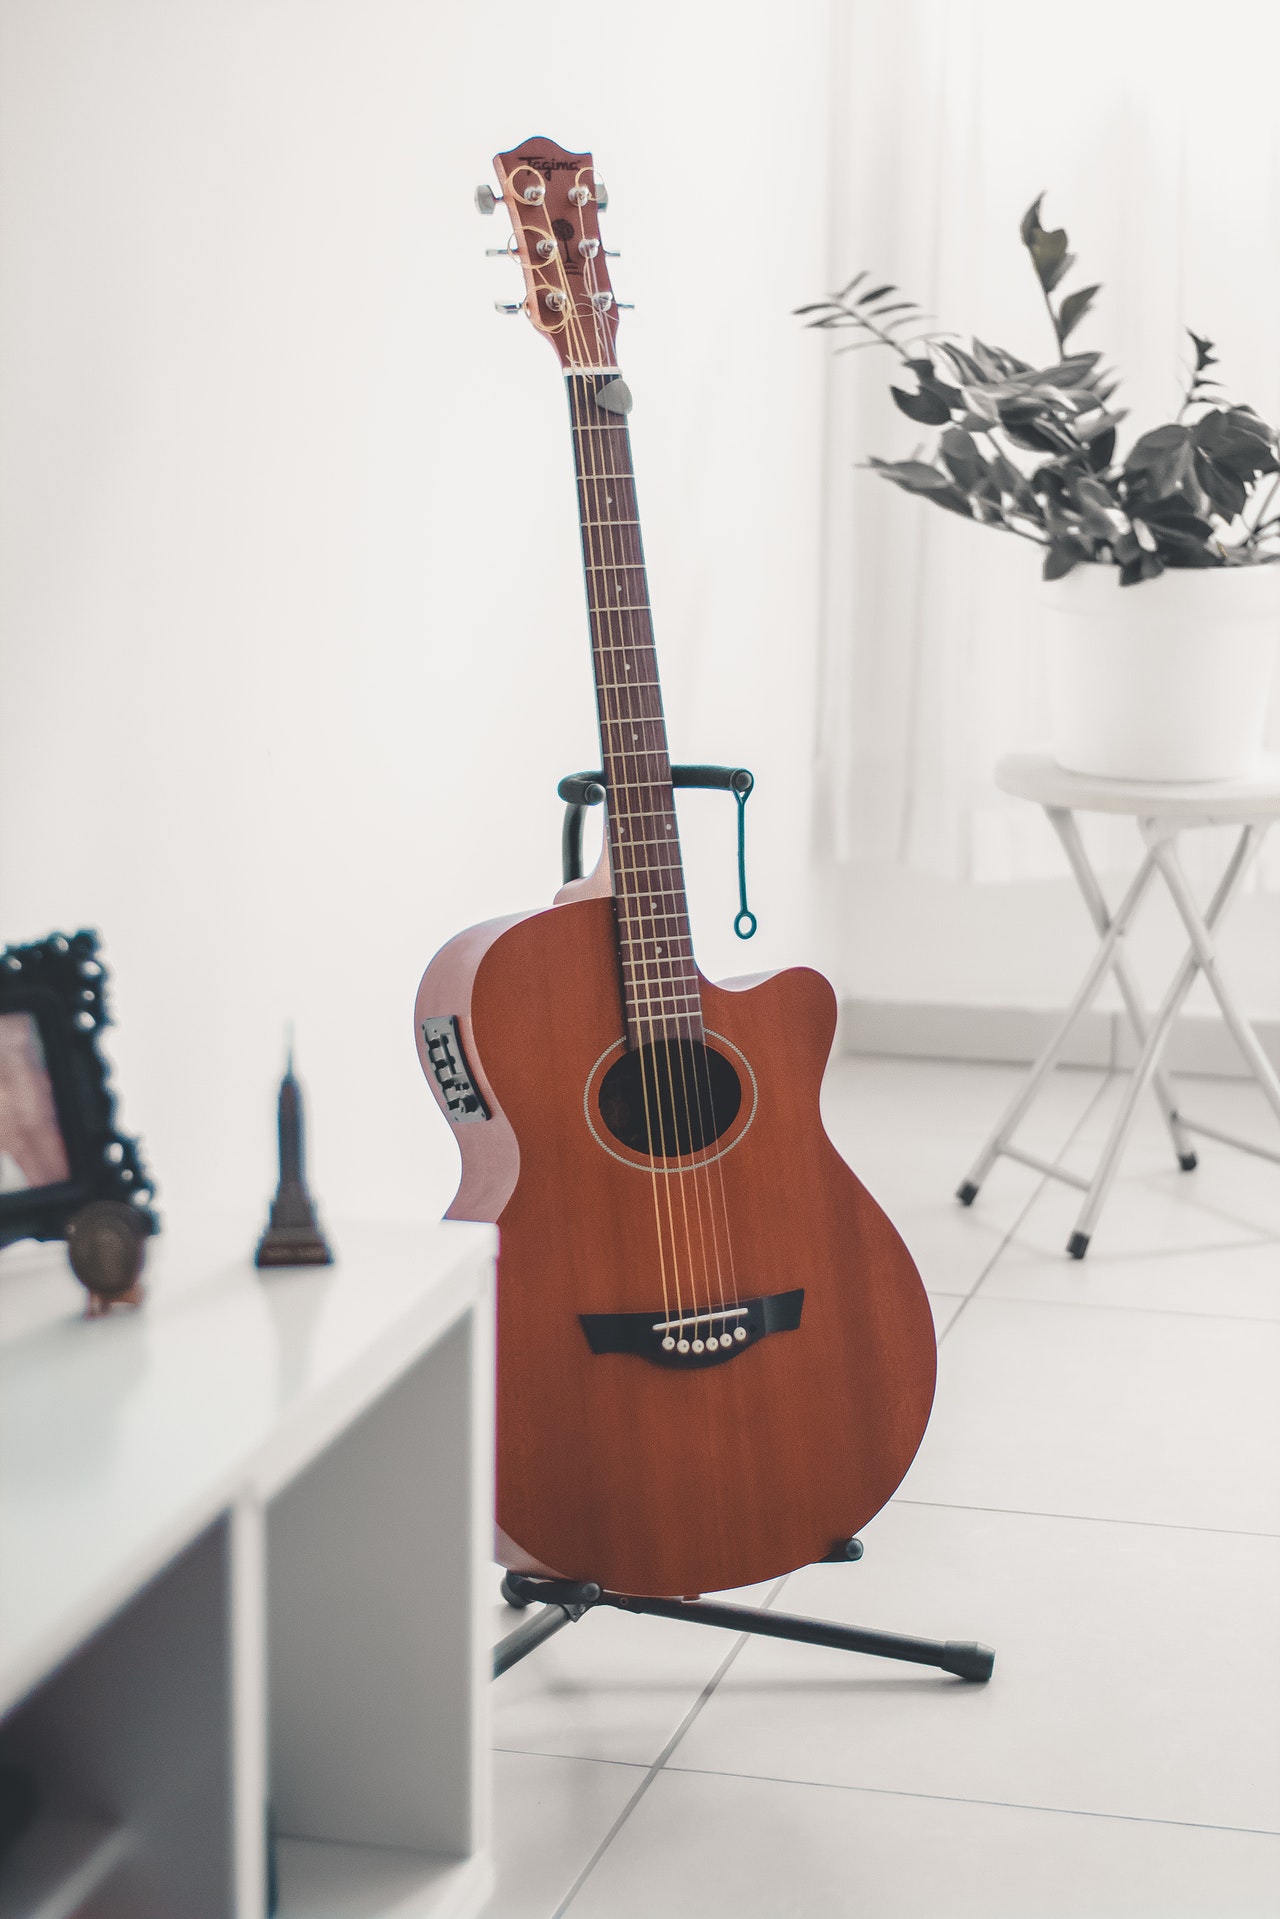 Yamaha C40 guitar